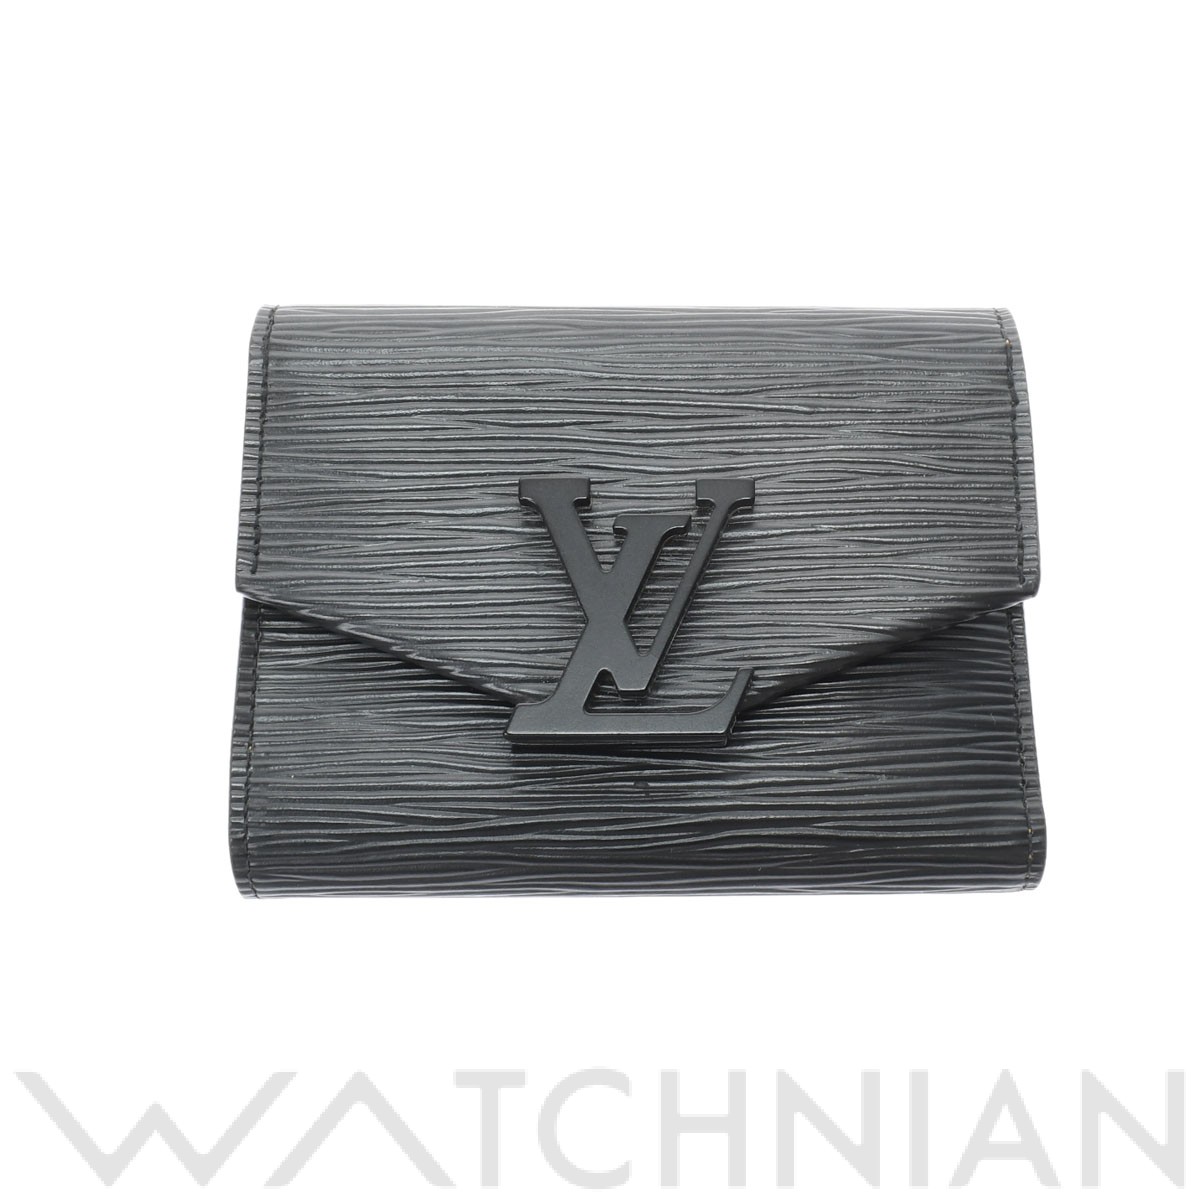 ルイ・ヴィトン Louis Vuitton ポルトフォイユ ヴィクトリーヌ M69218 三つ折り財布 ノワールSランク